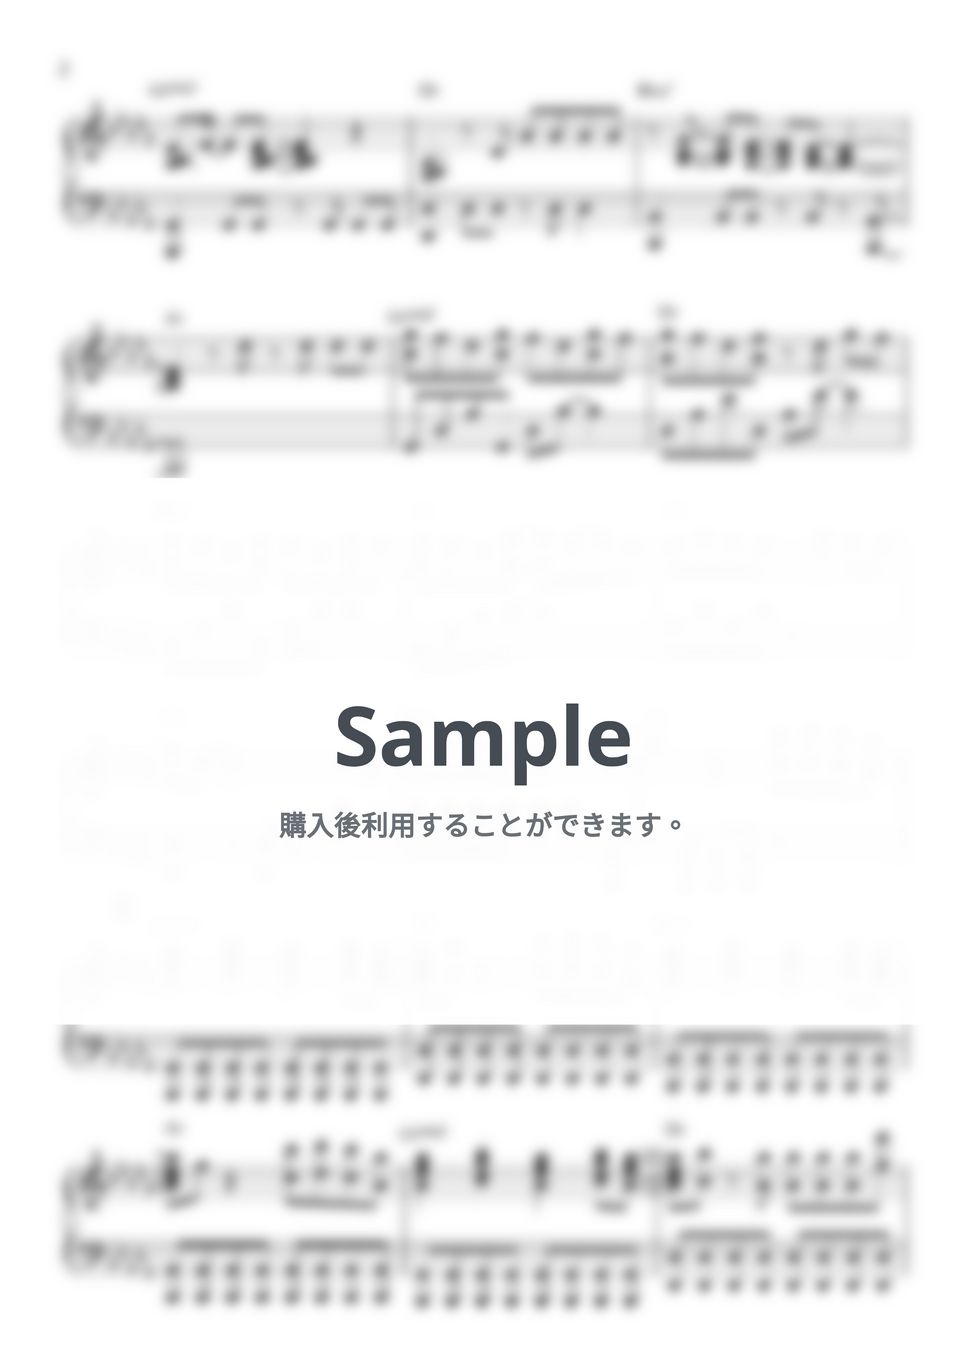 아이유(IU),슈가(SUGA) - Eight - Original Key by 247KpopPiano